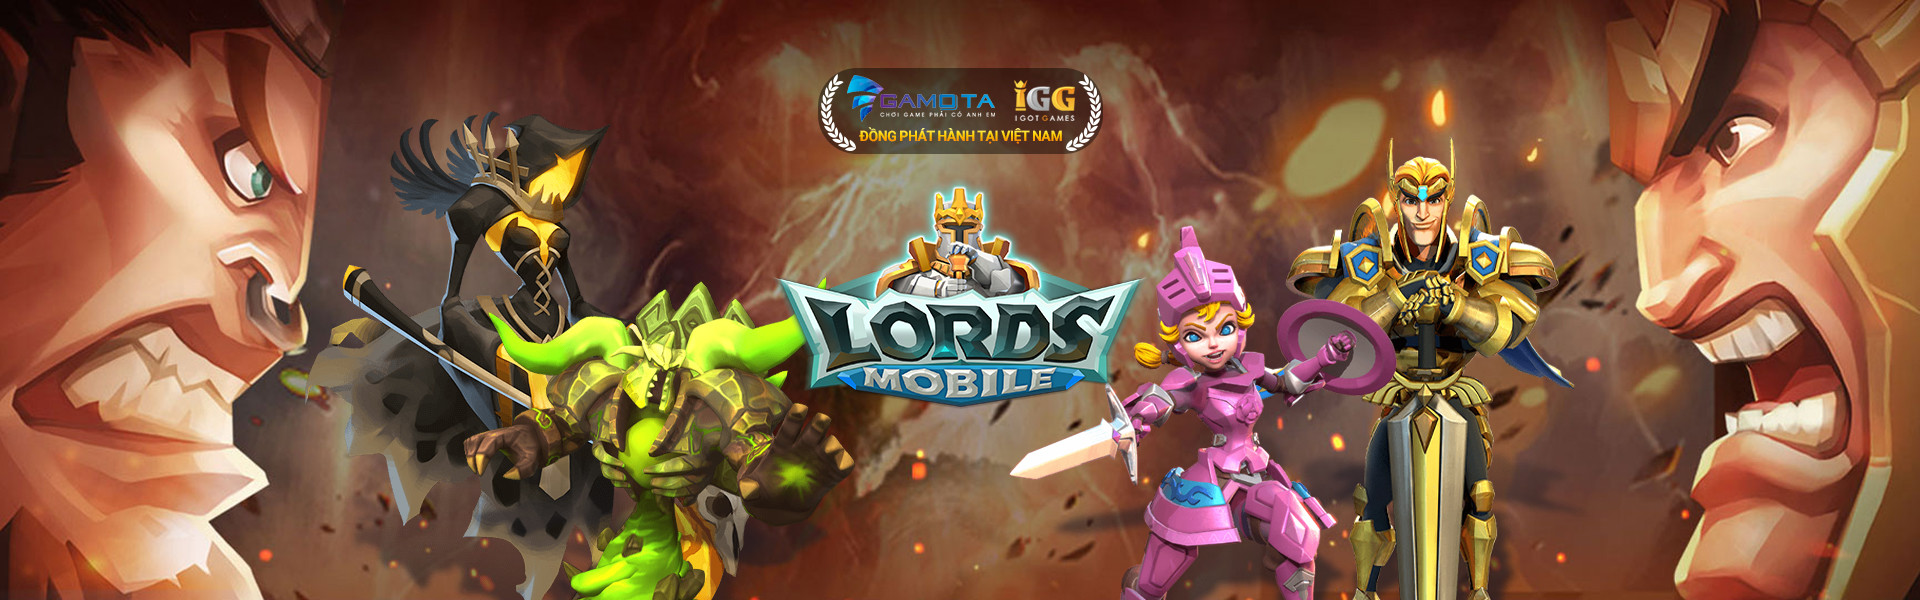 Lord Mobile - Game mobile xứng đáng vị trí tượng đài bất tử của thể loại game chiến thuật